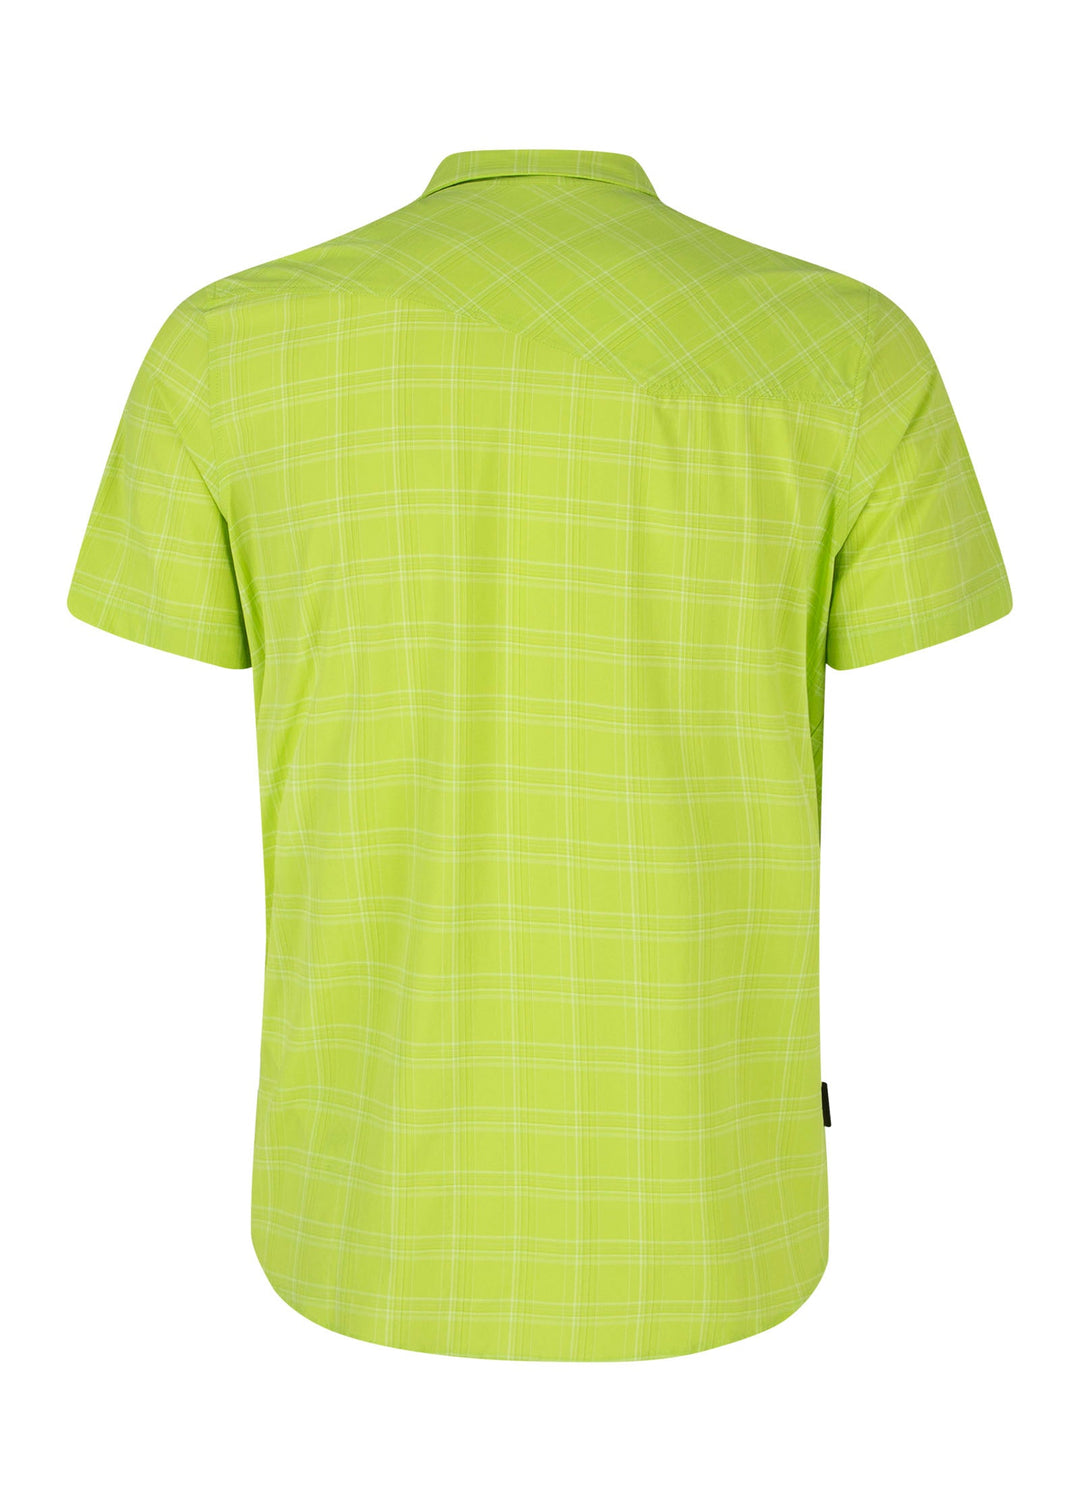 Felce 2 Shirt - Verde Lime - Blogside